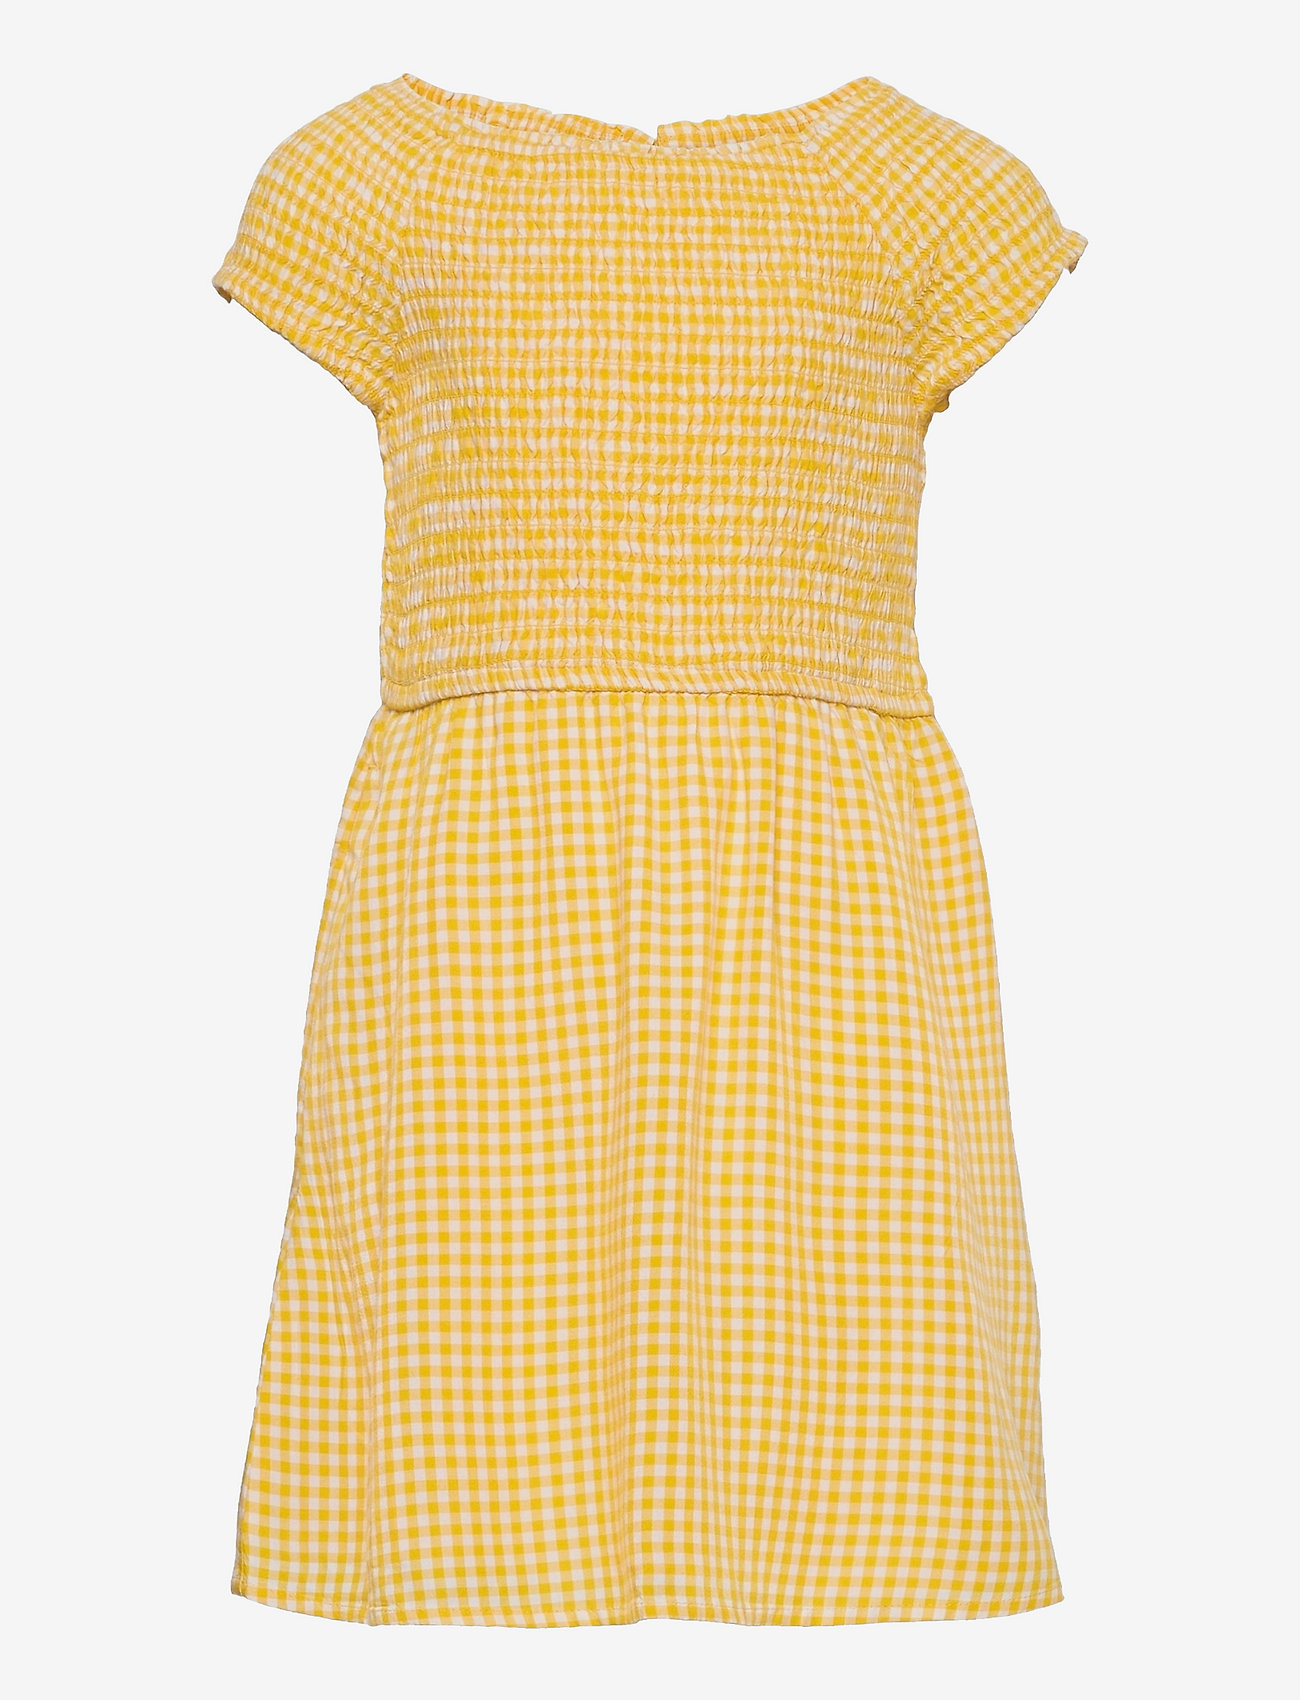 Abercrombie & Fitch - kids GIRLS DRESSES - kortærmede hverdagskjoler - light yellow patt - 0